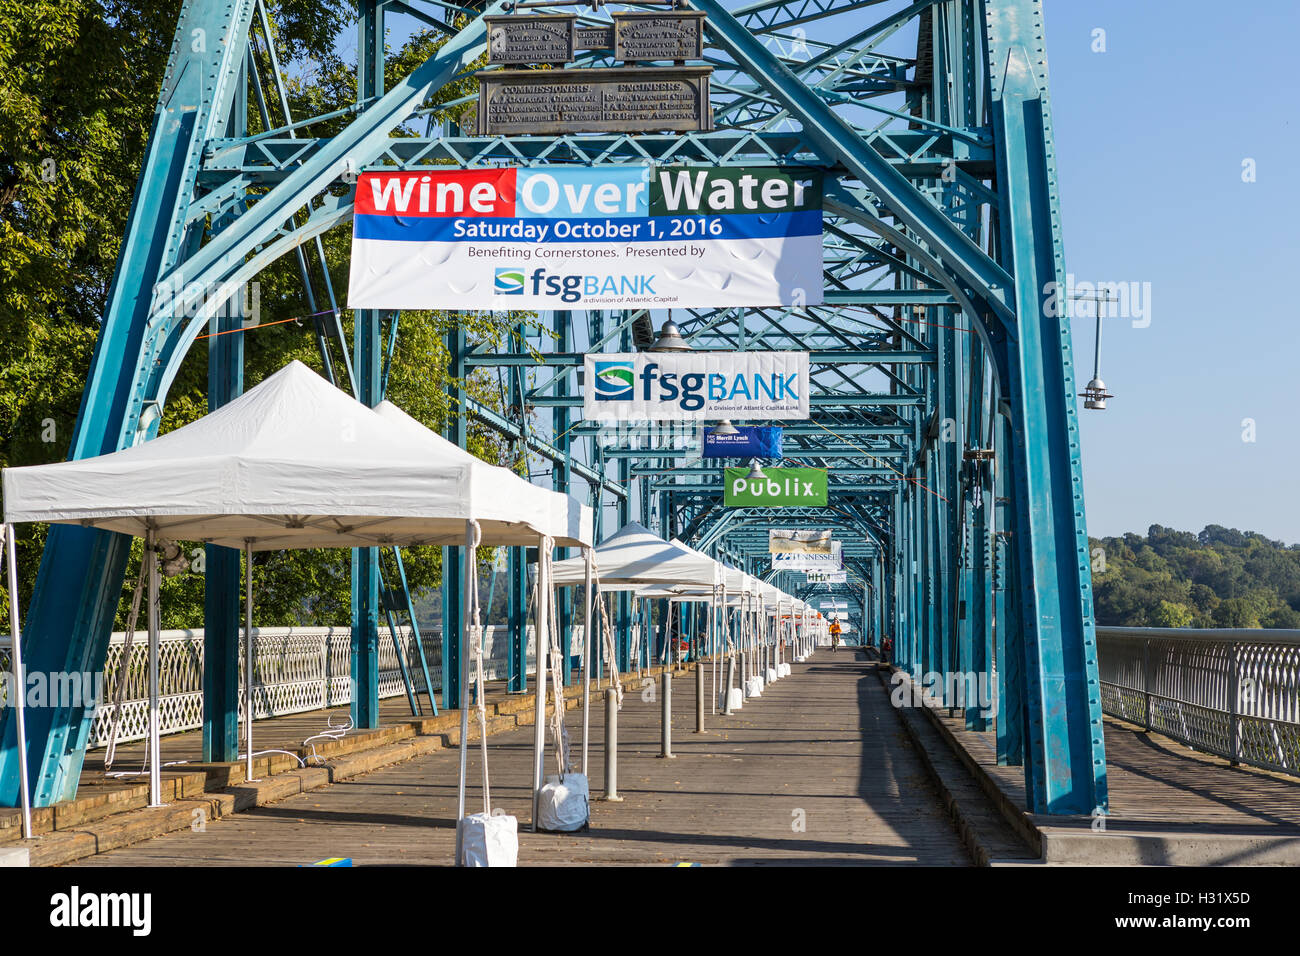 Le pont piétonnier de la rue noyer partiellement mis en place pour le vin au-dessus de l'eau festival de dégustation de vin dans la région de Chattanooga, Tennessee. Banque D'Images